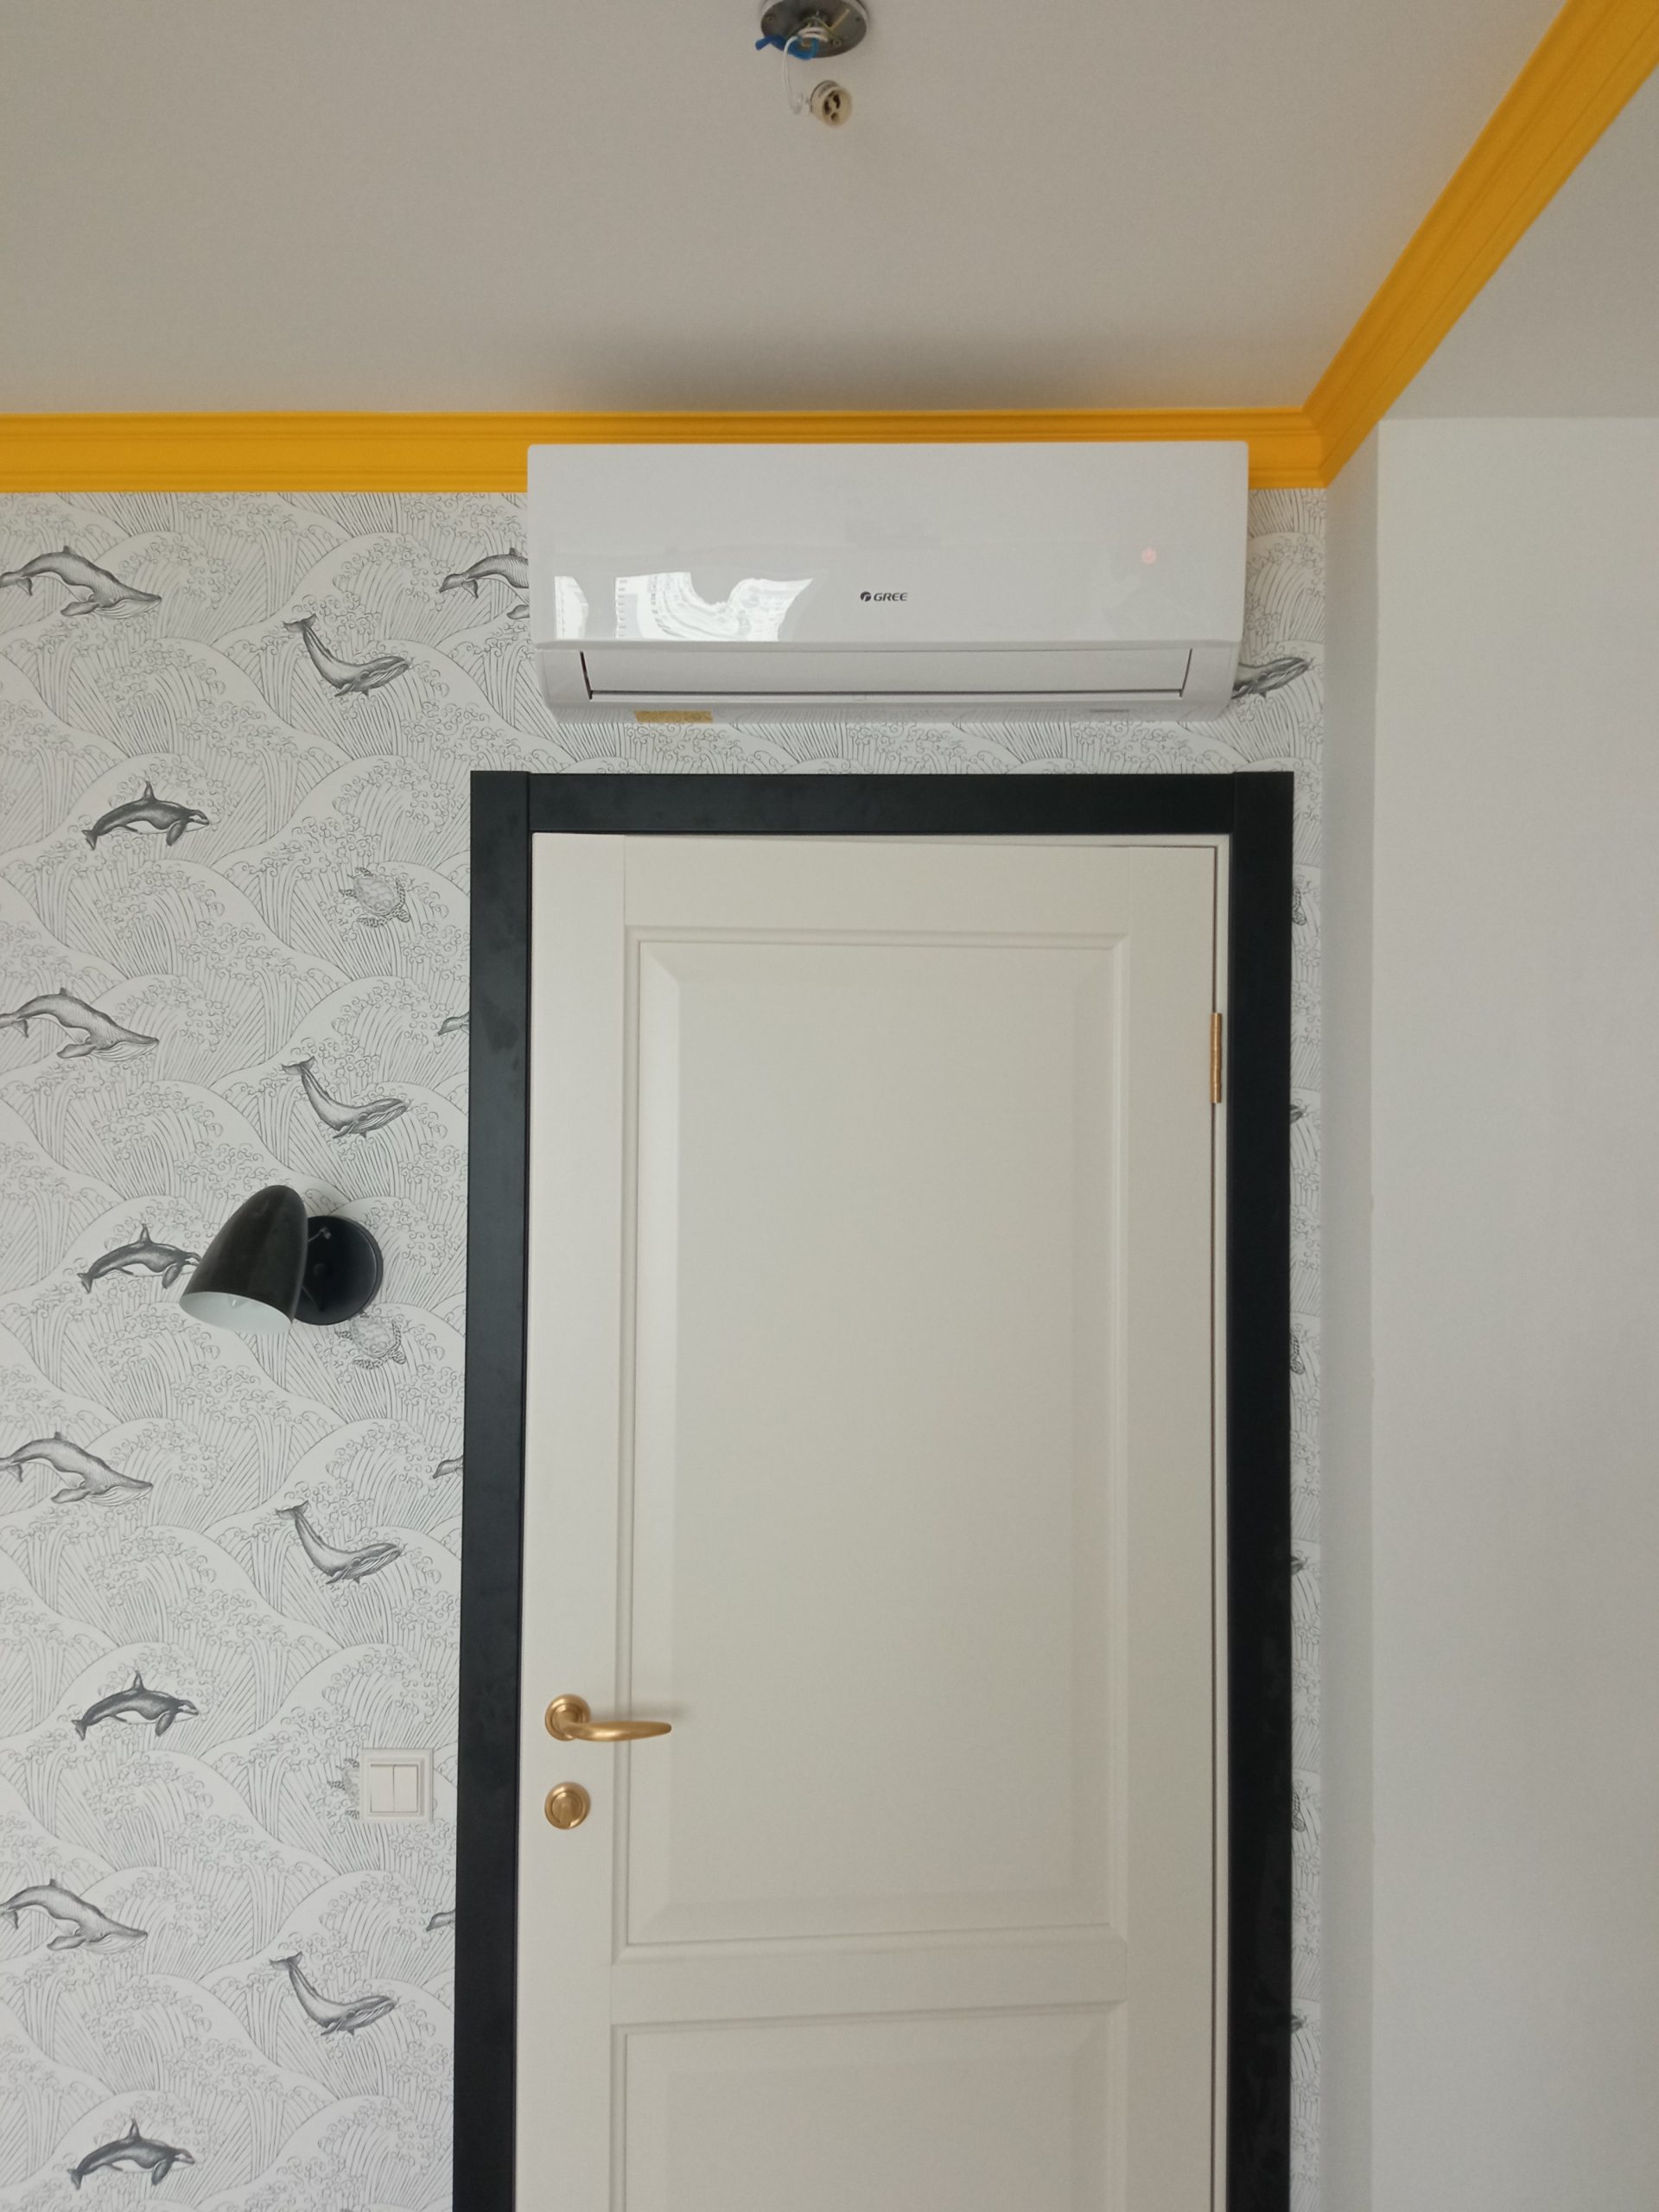 Белый кондиционер Gree над дверью на черно белой стене с желтым плинтусом